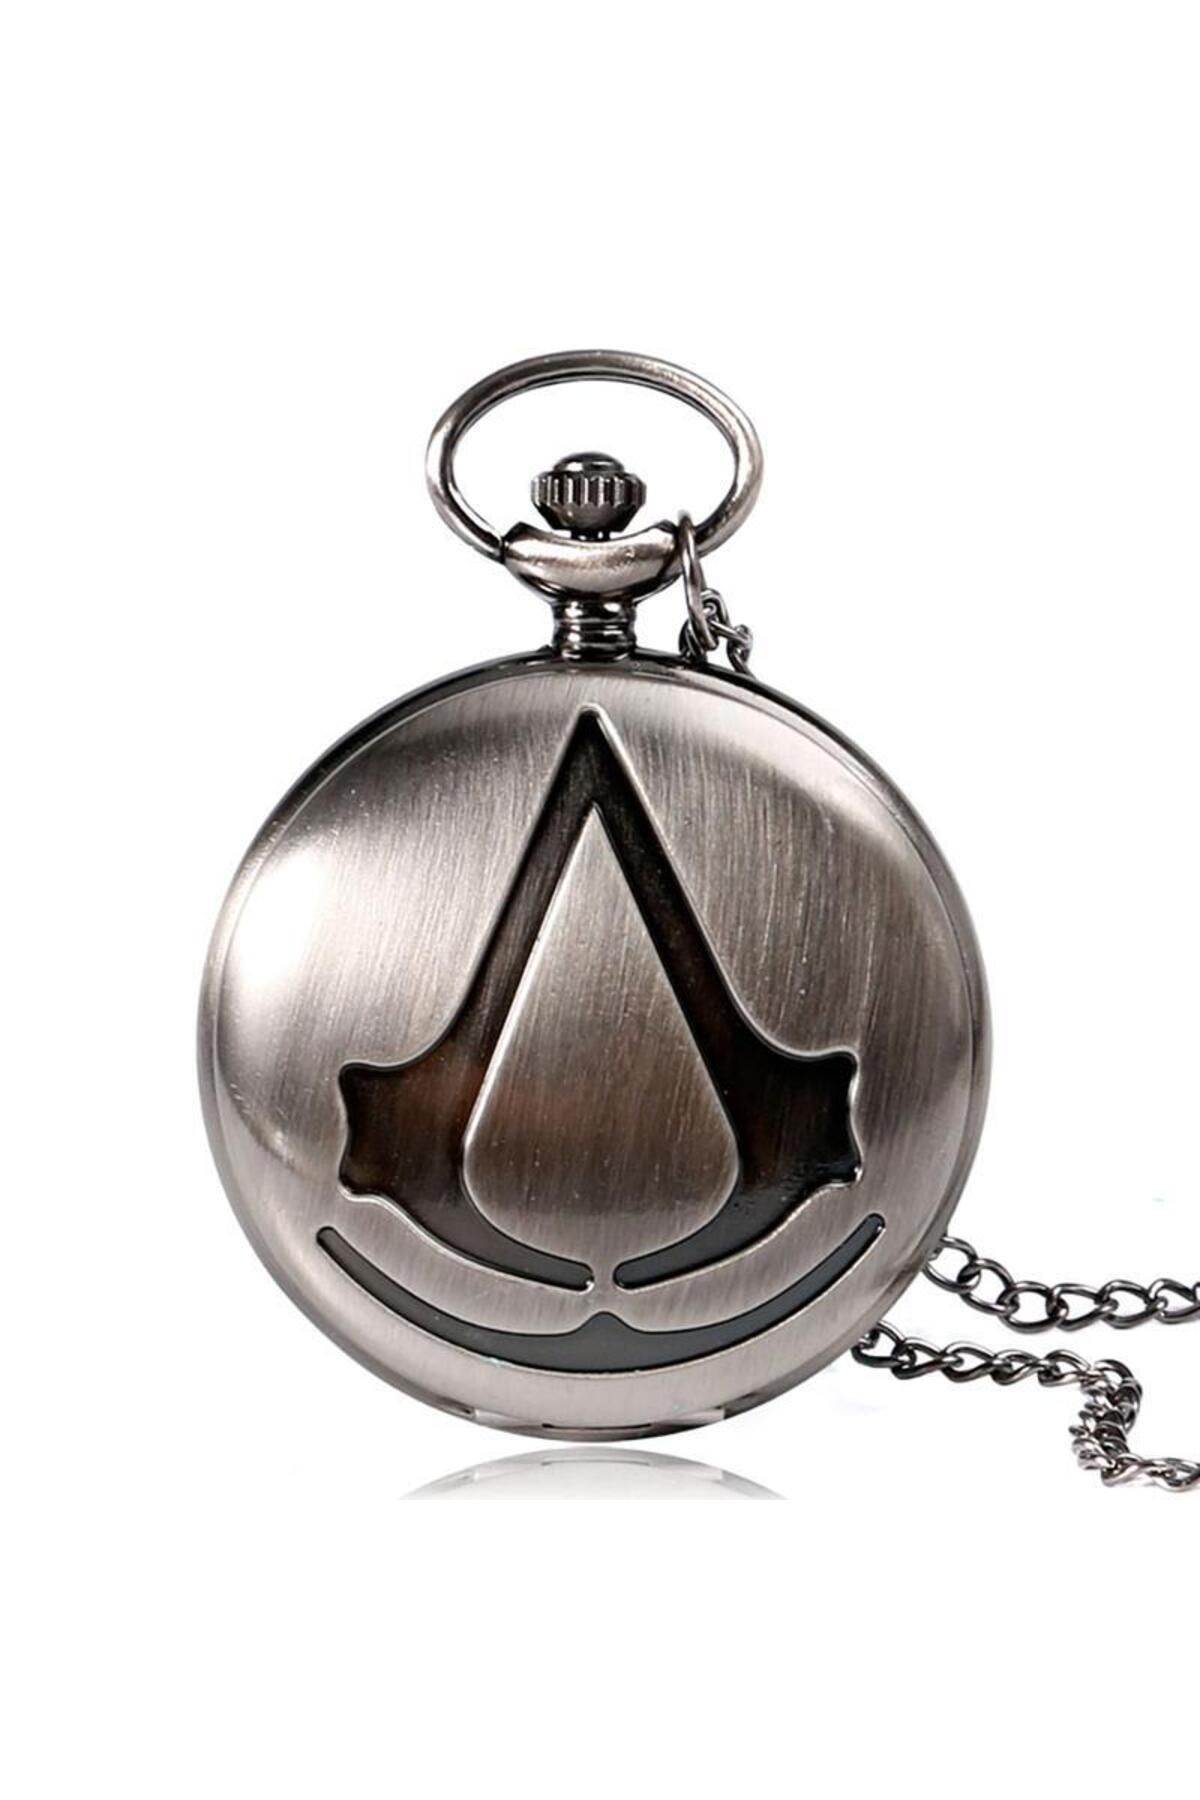 valkyrie Assassin's Creed Kutulu Köstekli Cep Saati